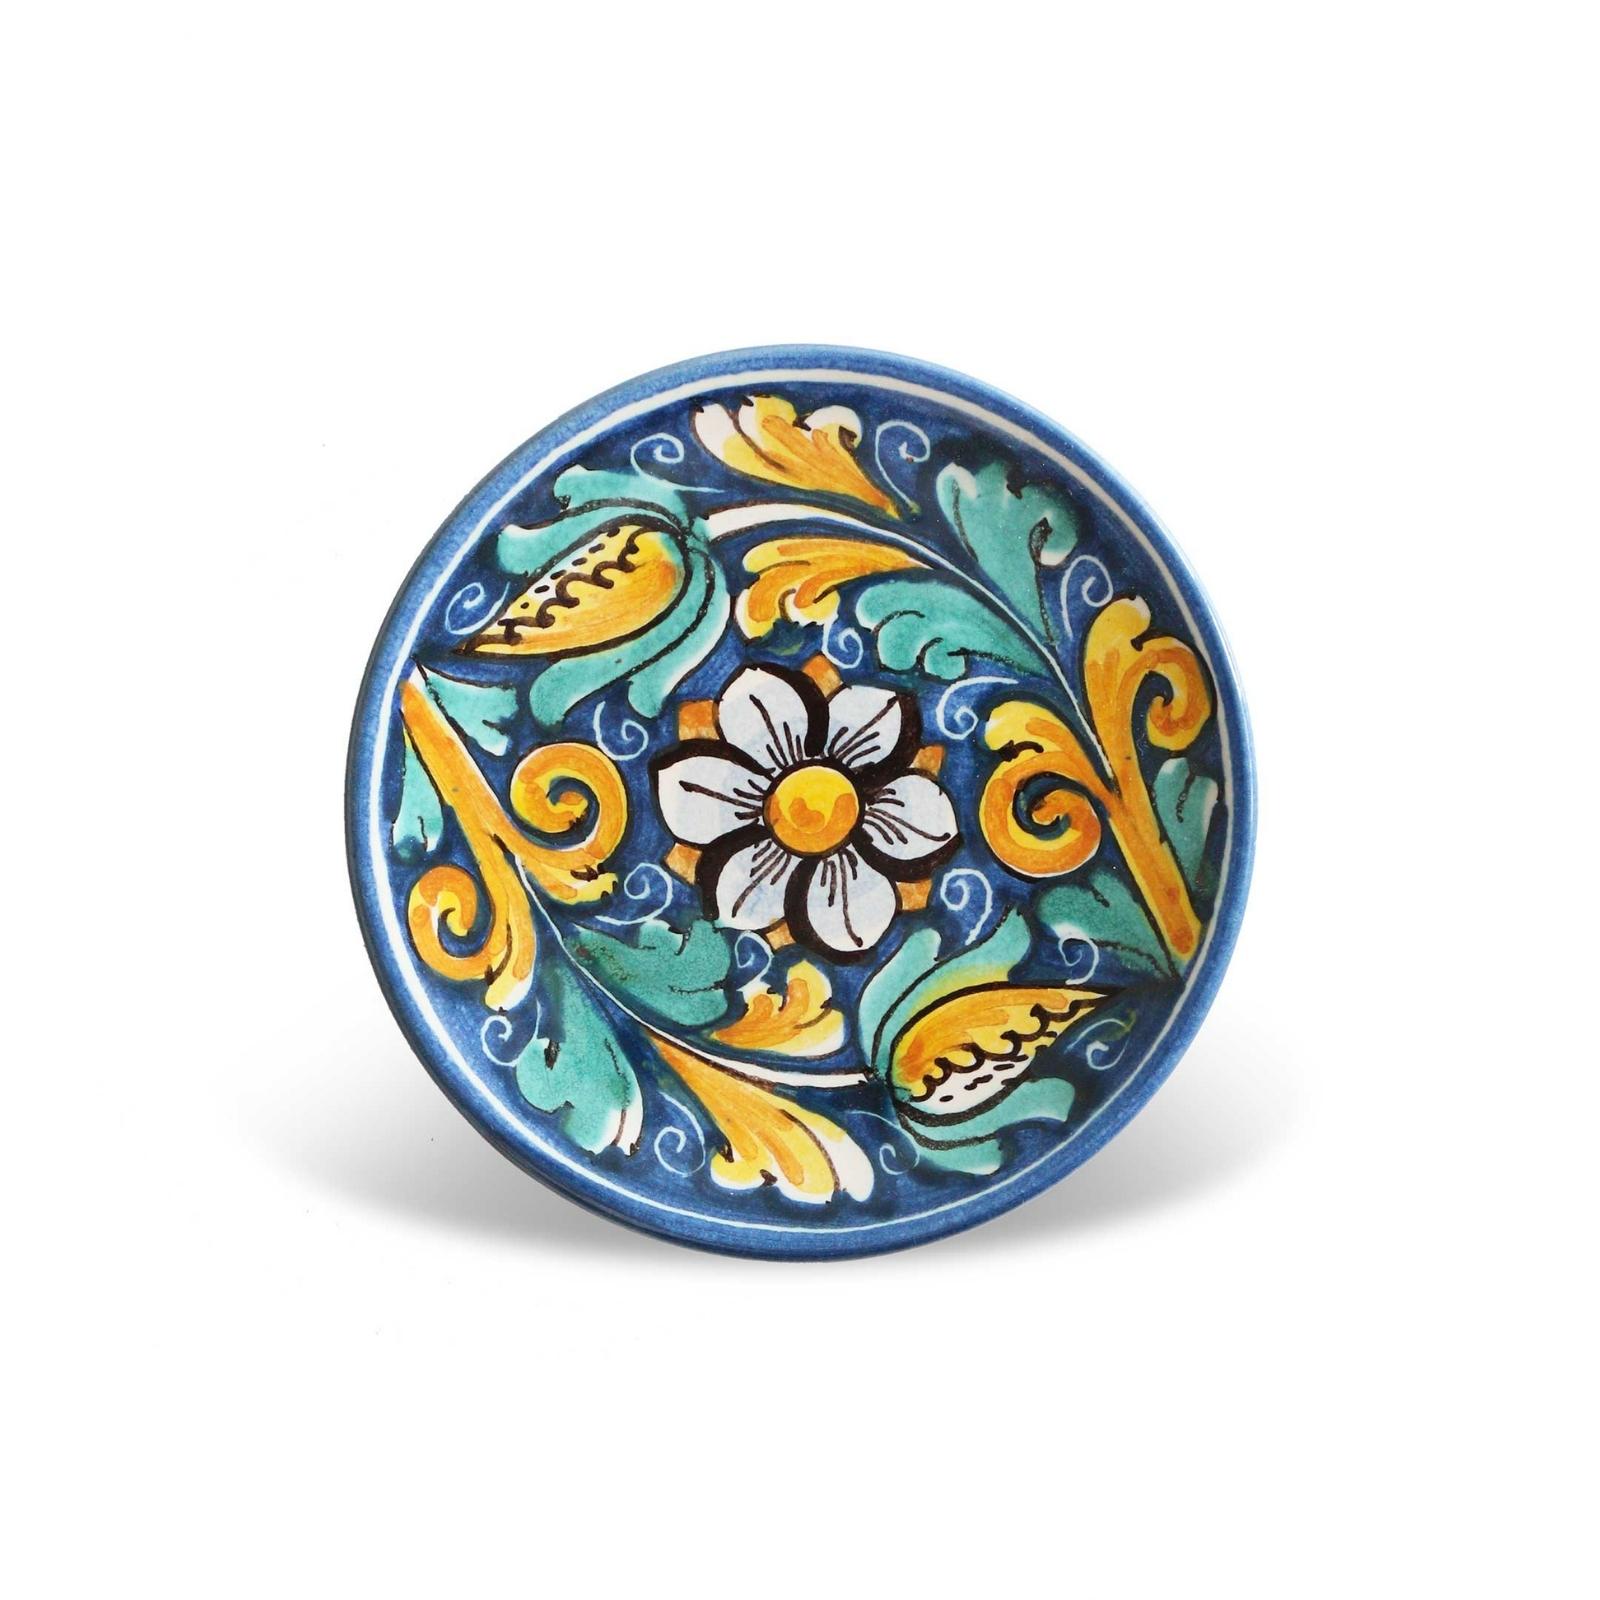 Small plate caltagirone decorated ceramic – Agira